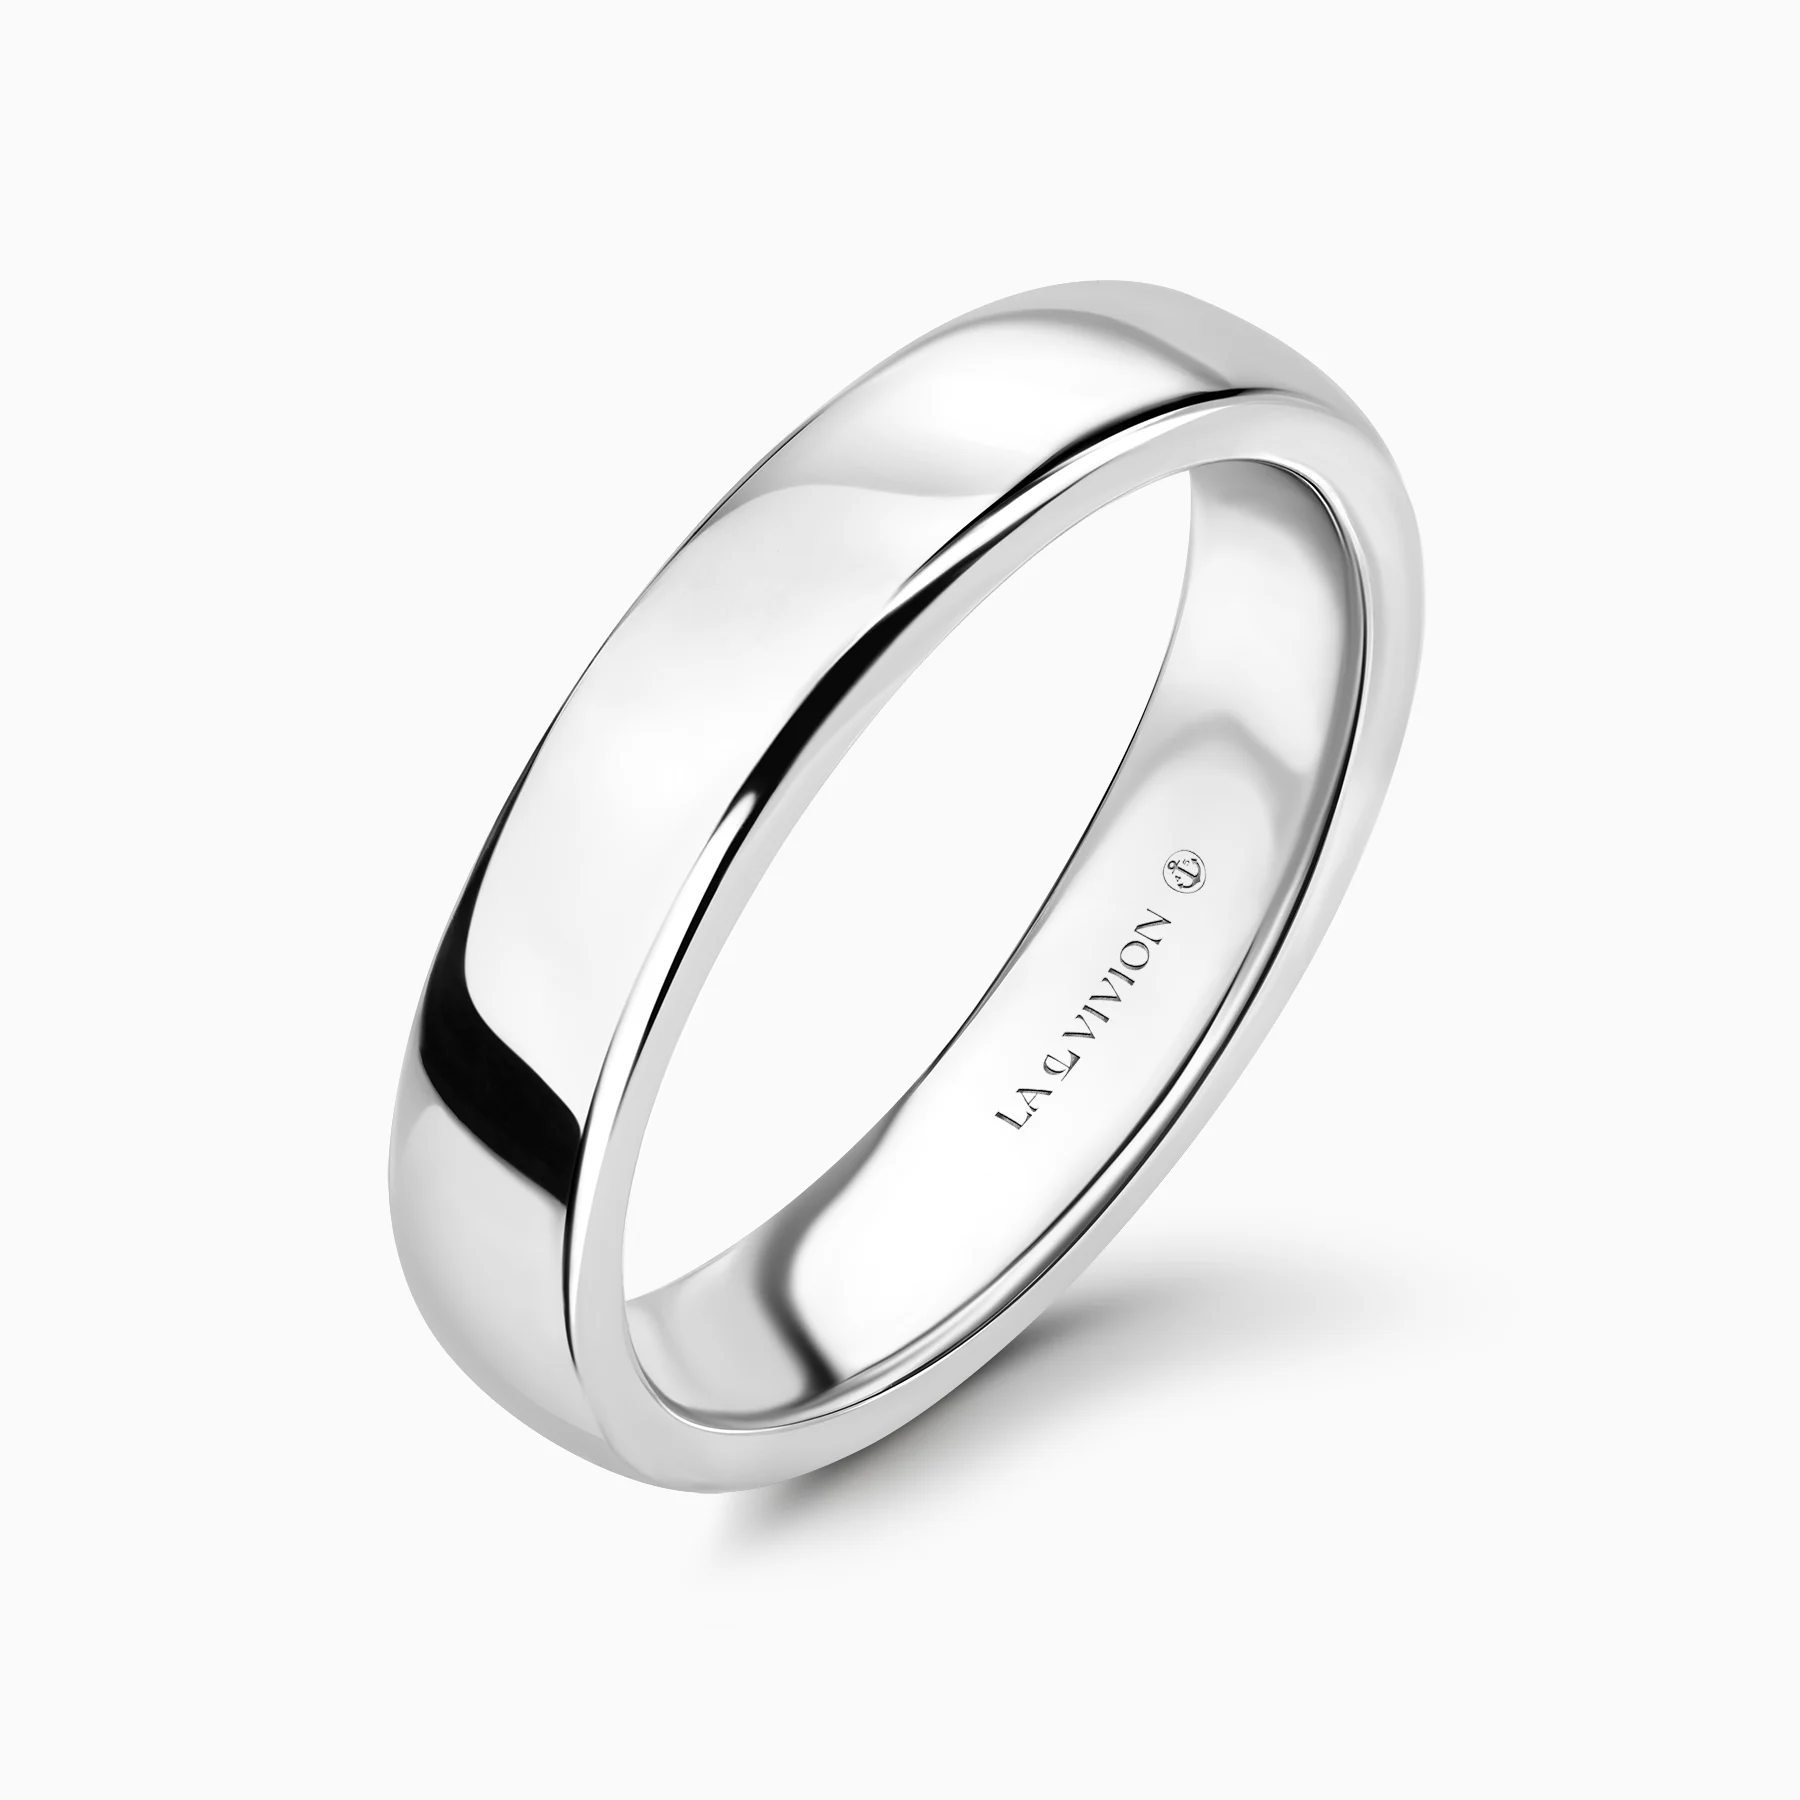 Обручальное кольцо Le Avenir 4.5 mm (Будущее)